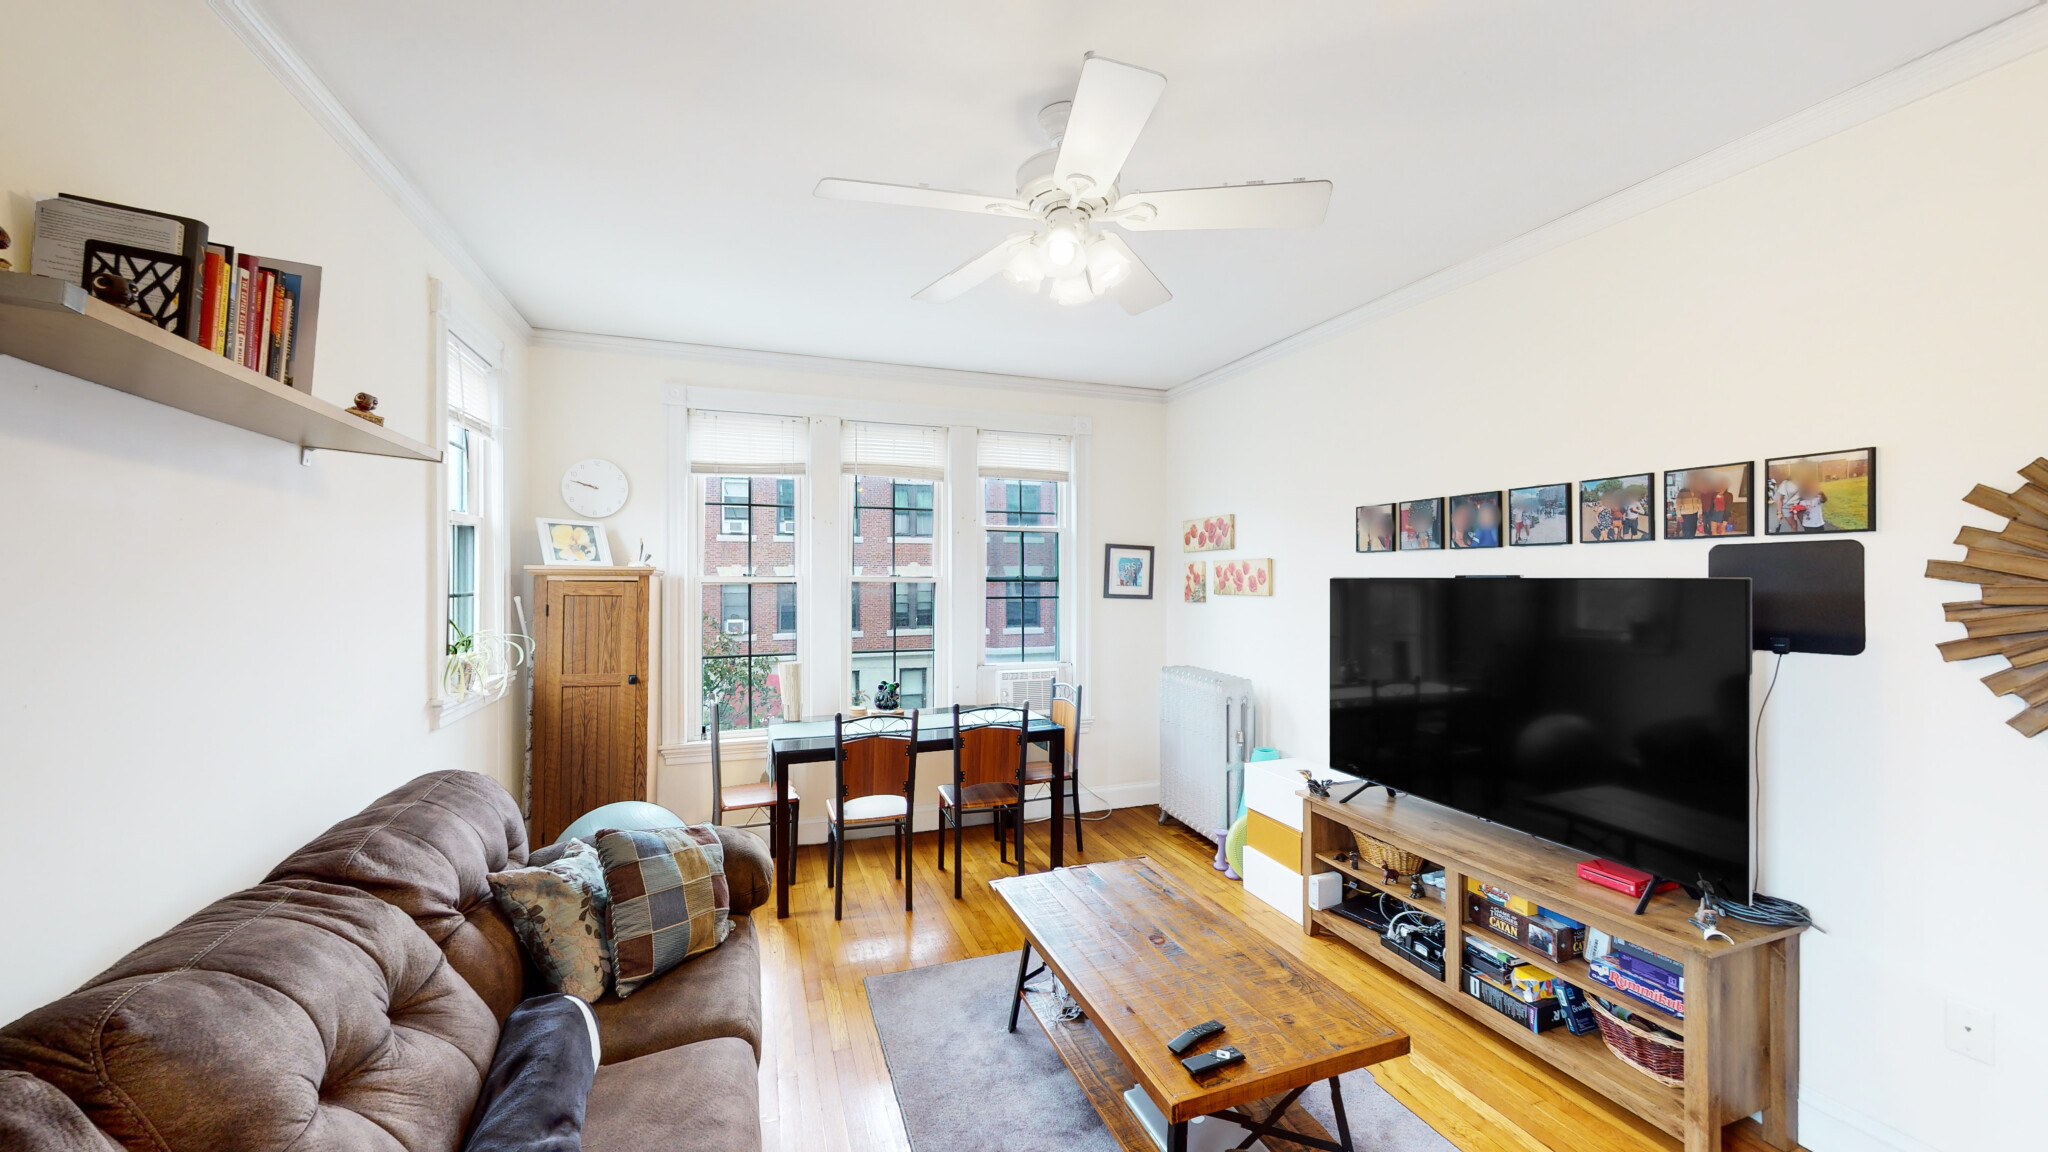 Photos of apartment on Telford St.,Boston MA 02134